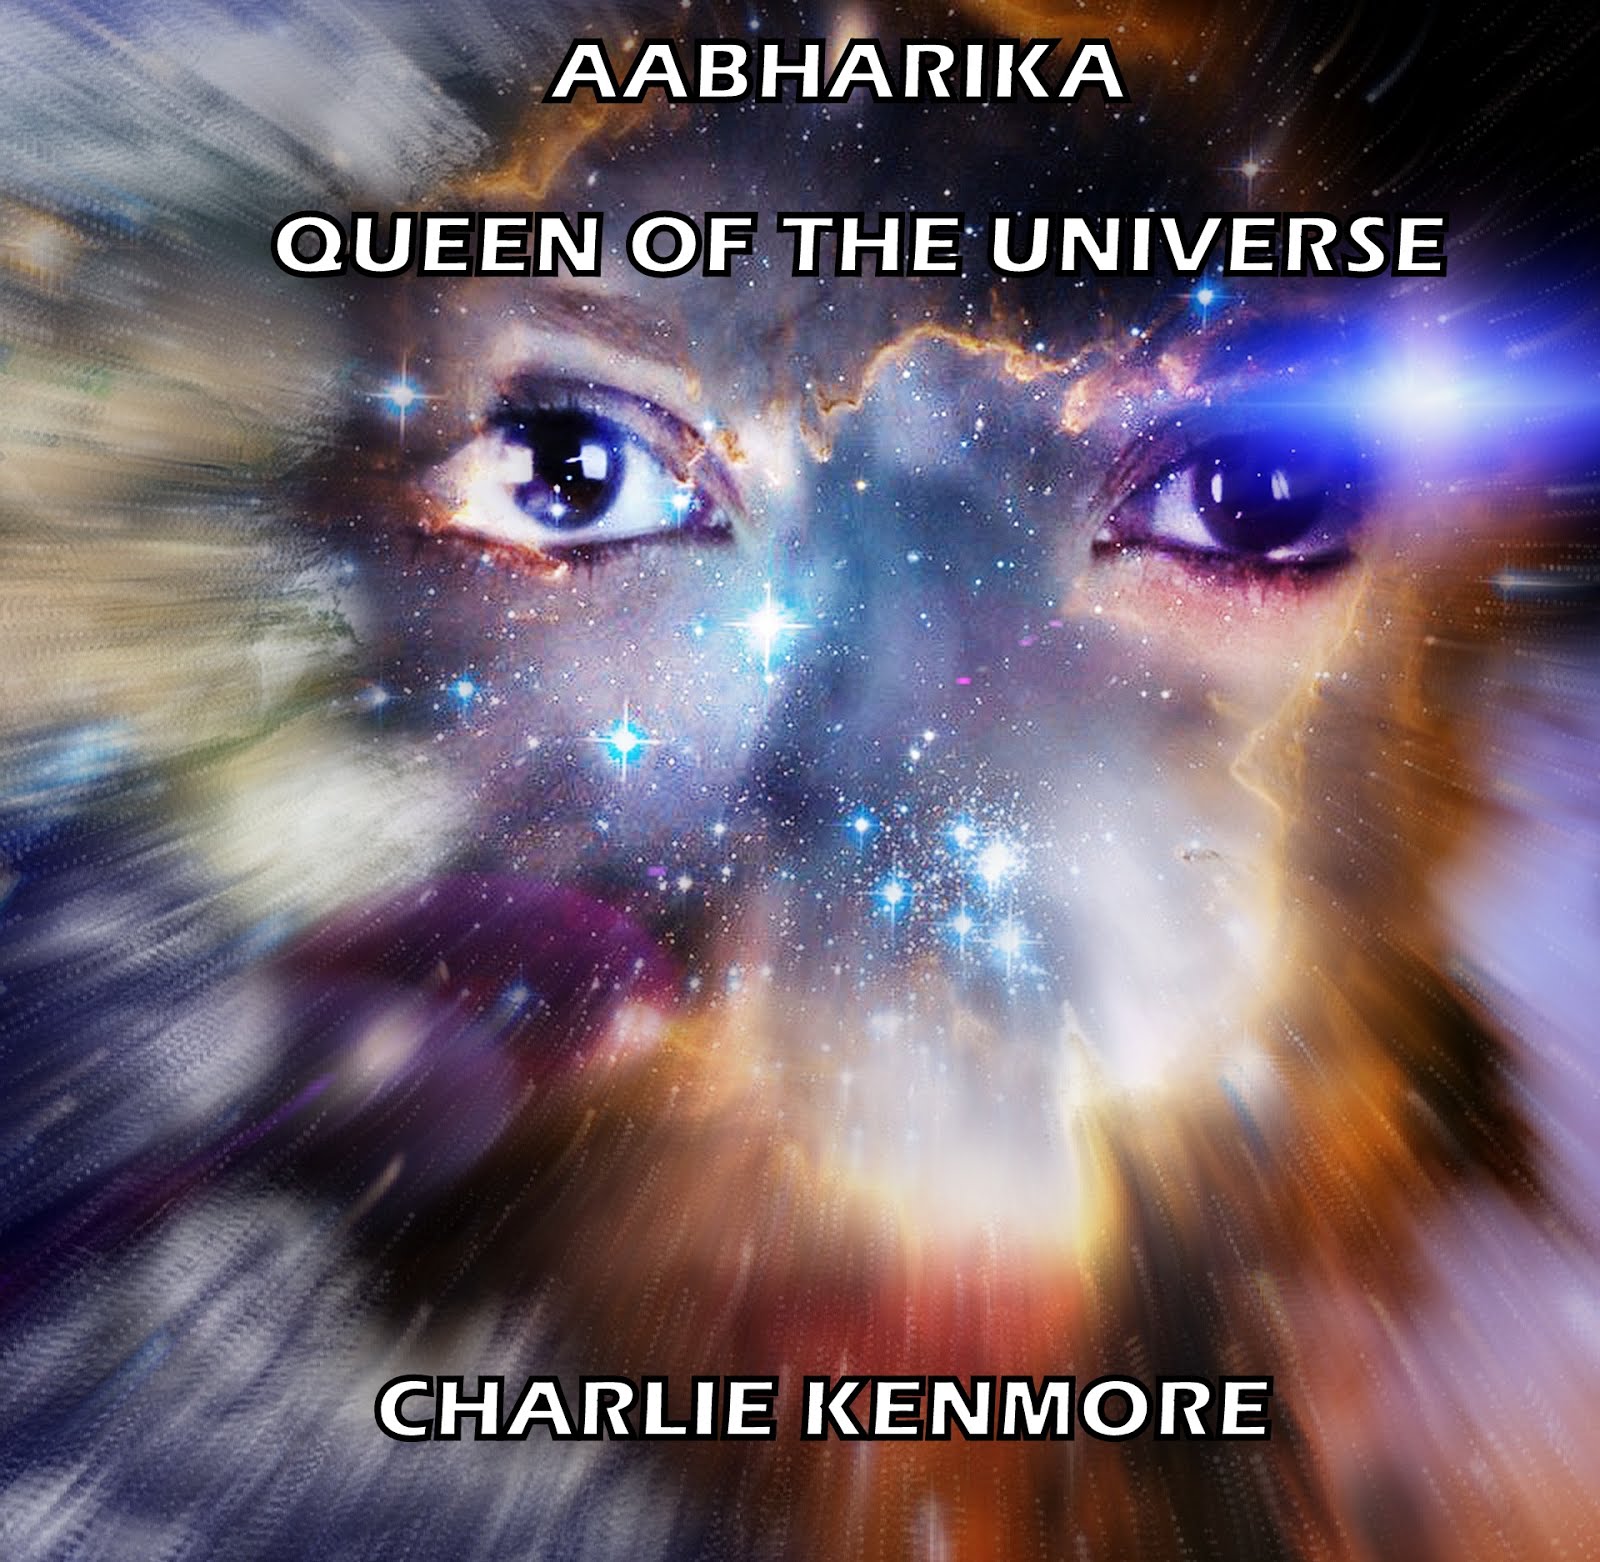 Aabharika Queen of the Universe